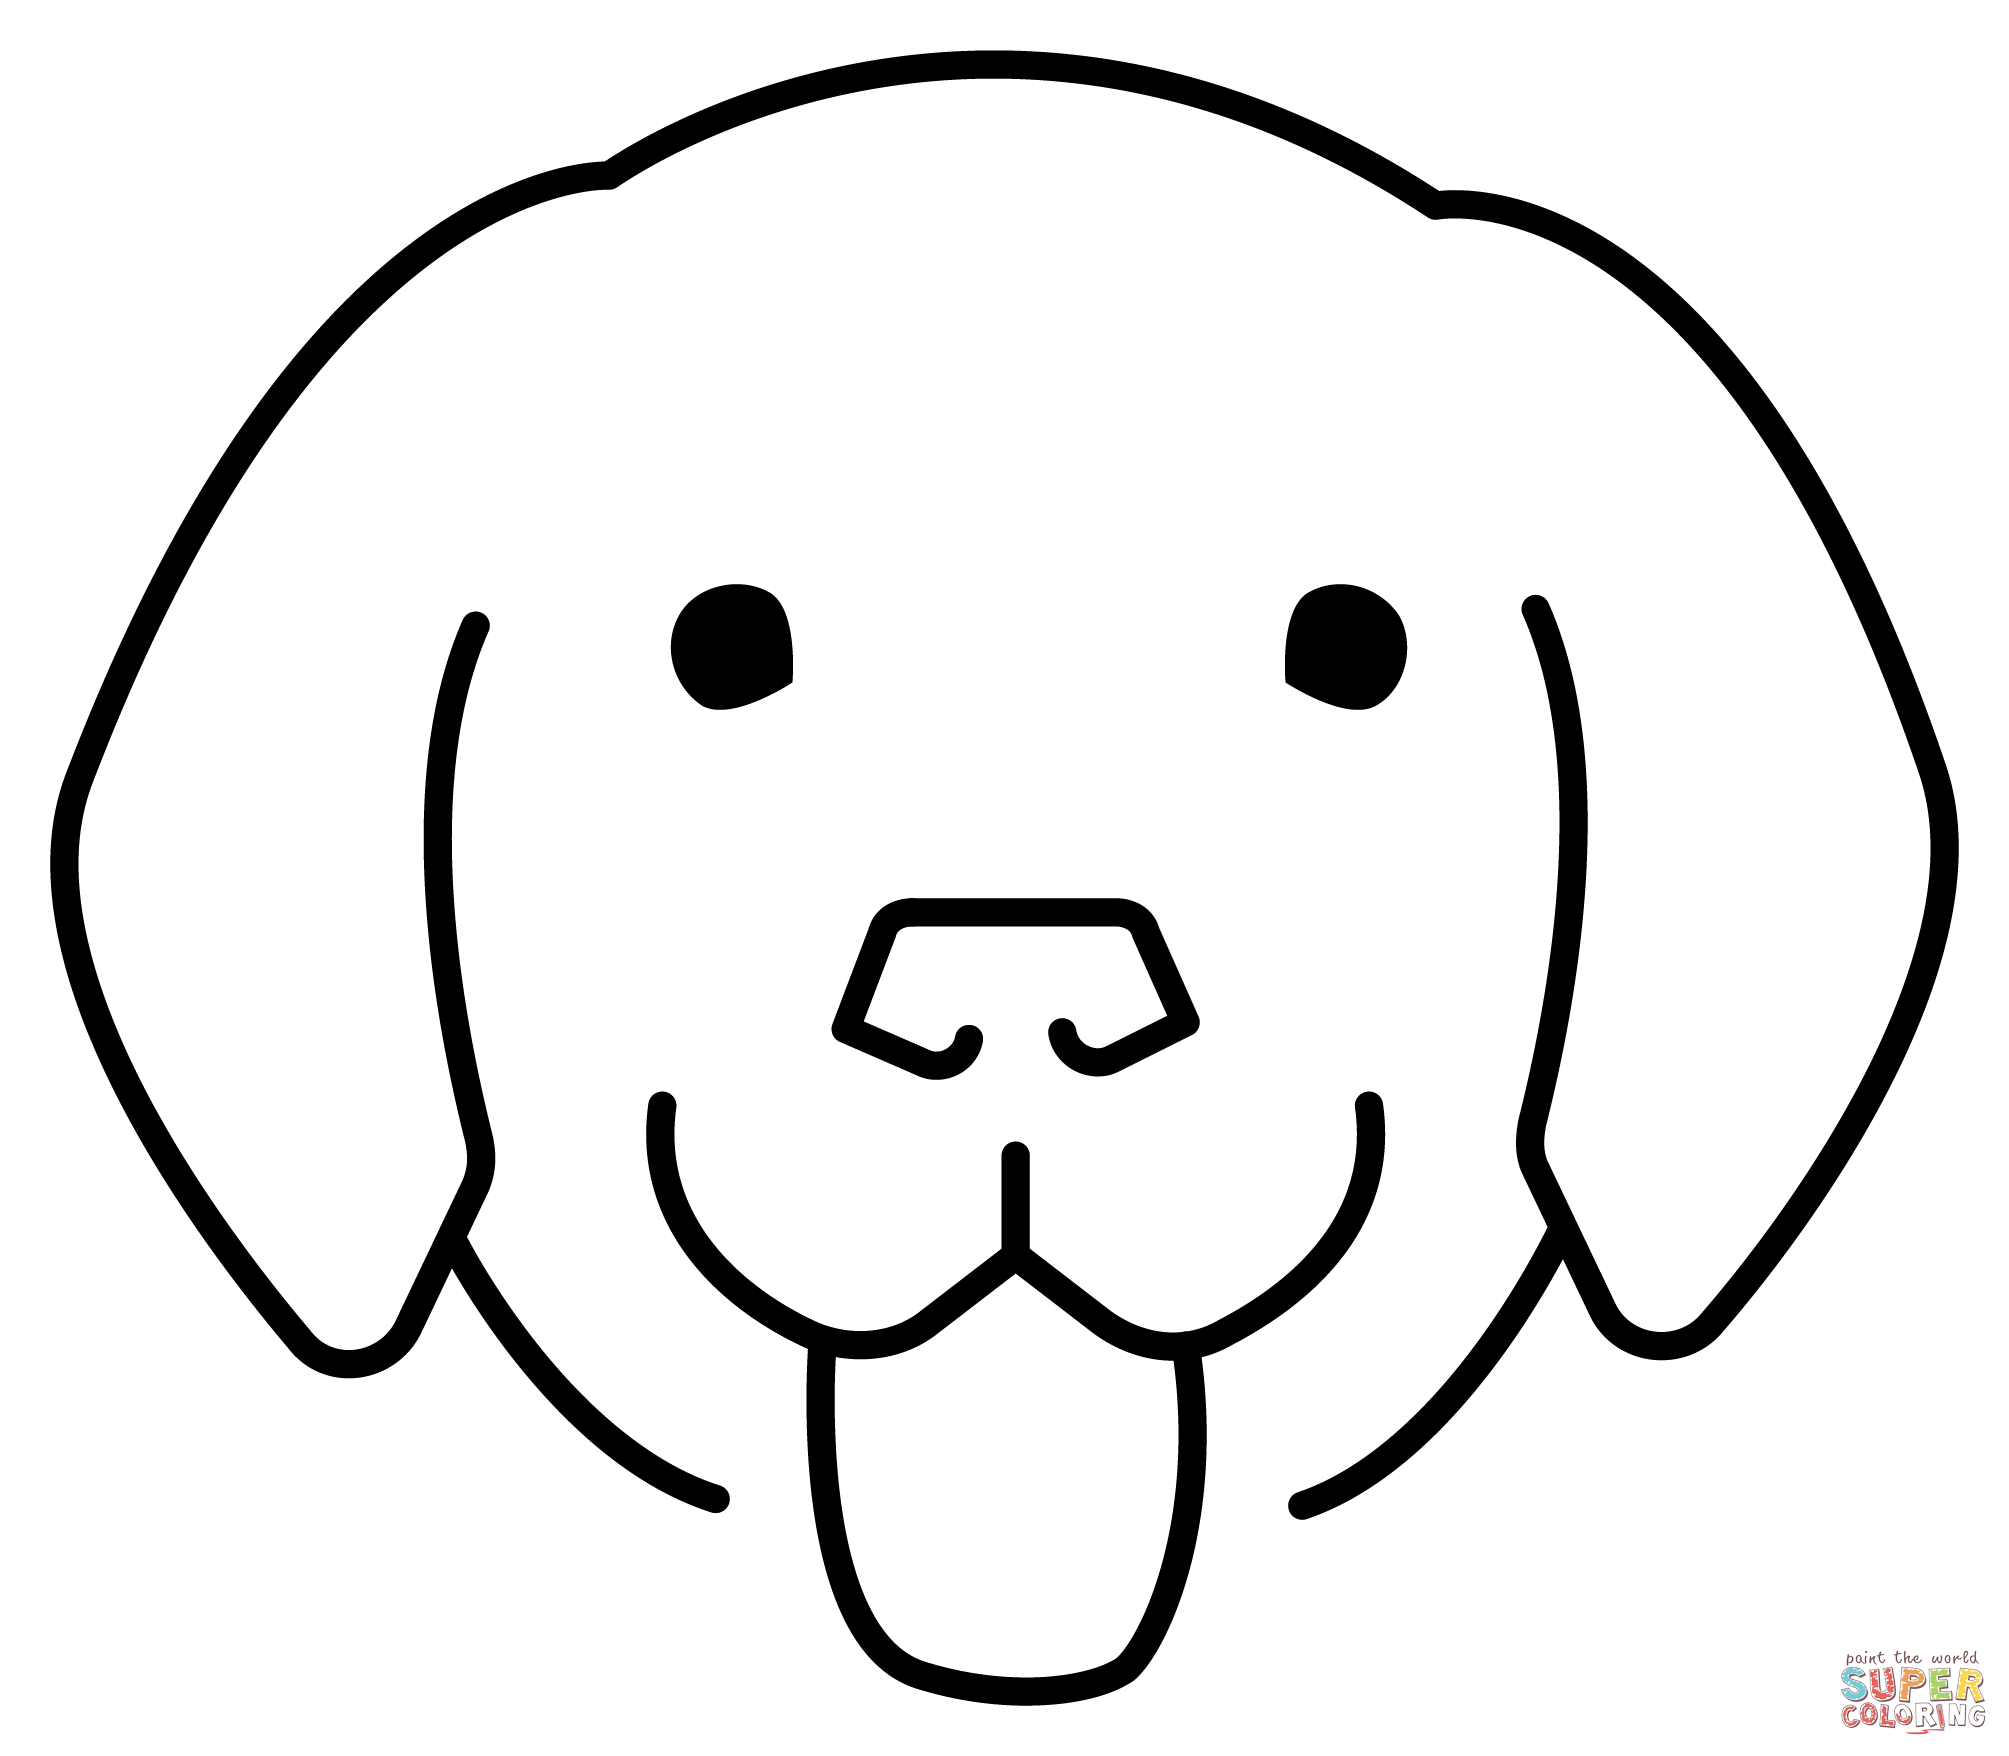 Dibujo de emoticono de cara de perro para colorear dibujos para colorear imprimir gratis